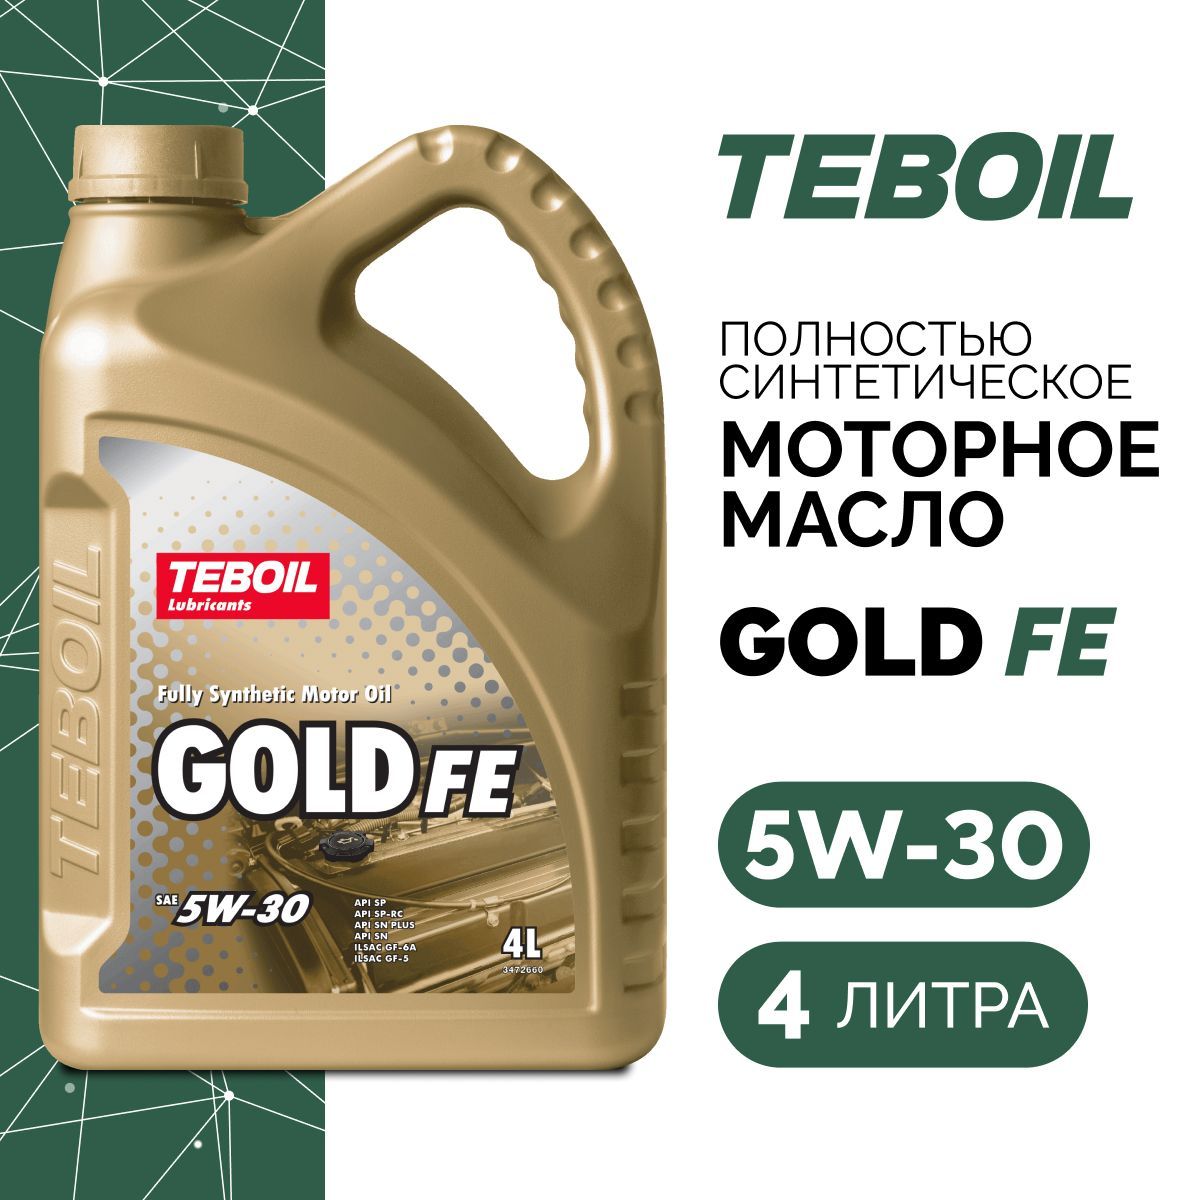 Моторное масло teboil gold l. Teboil 5w30 Gold. Тебойл 5w40 Gold. Масло Тебойл 5w30 Gold Fe. Teboil Gold Fe 5w-30,1л.